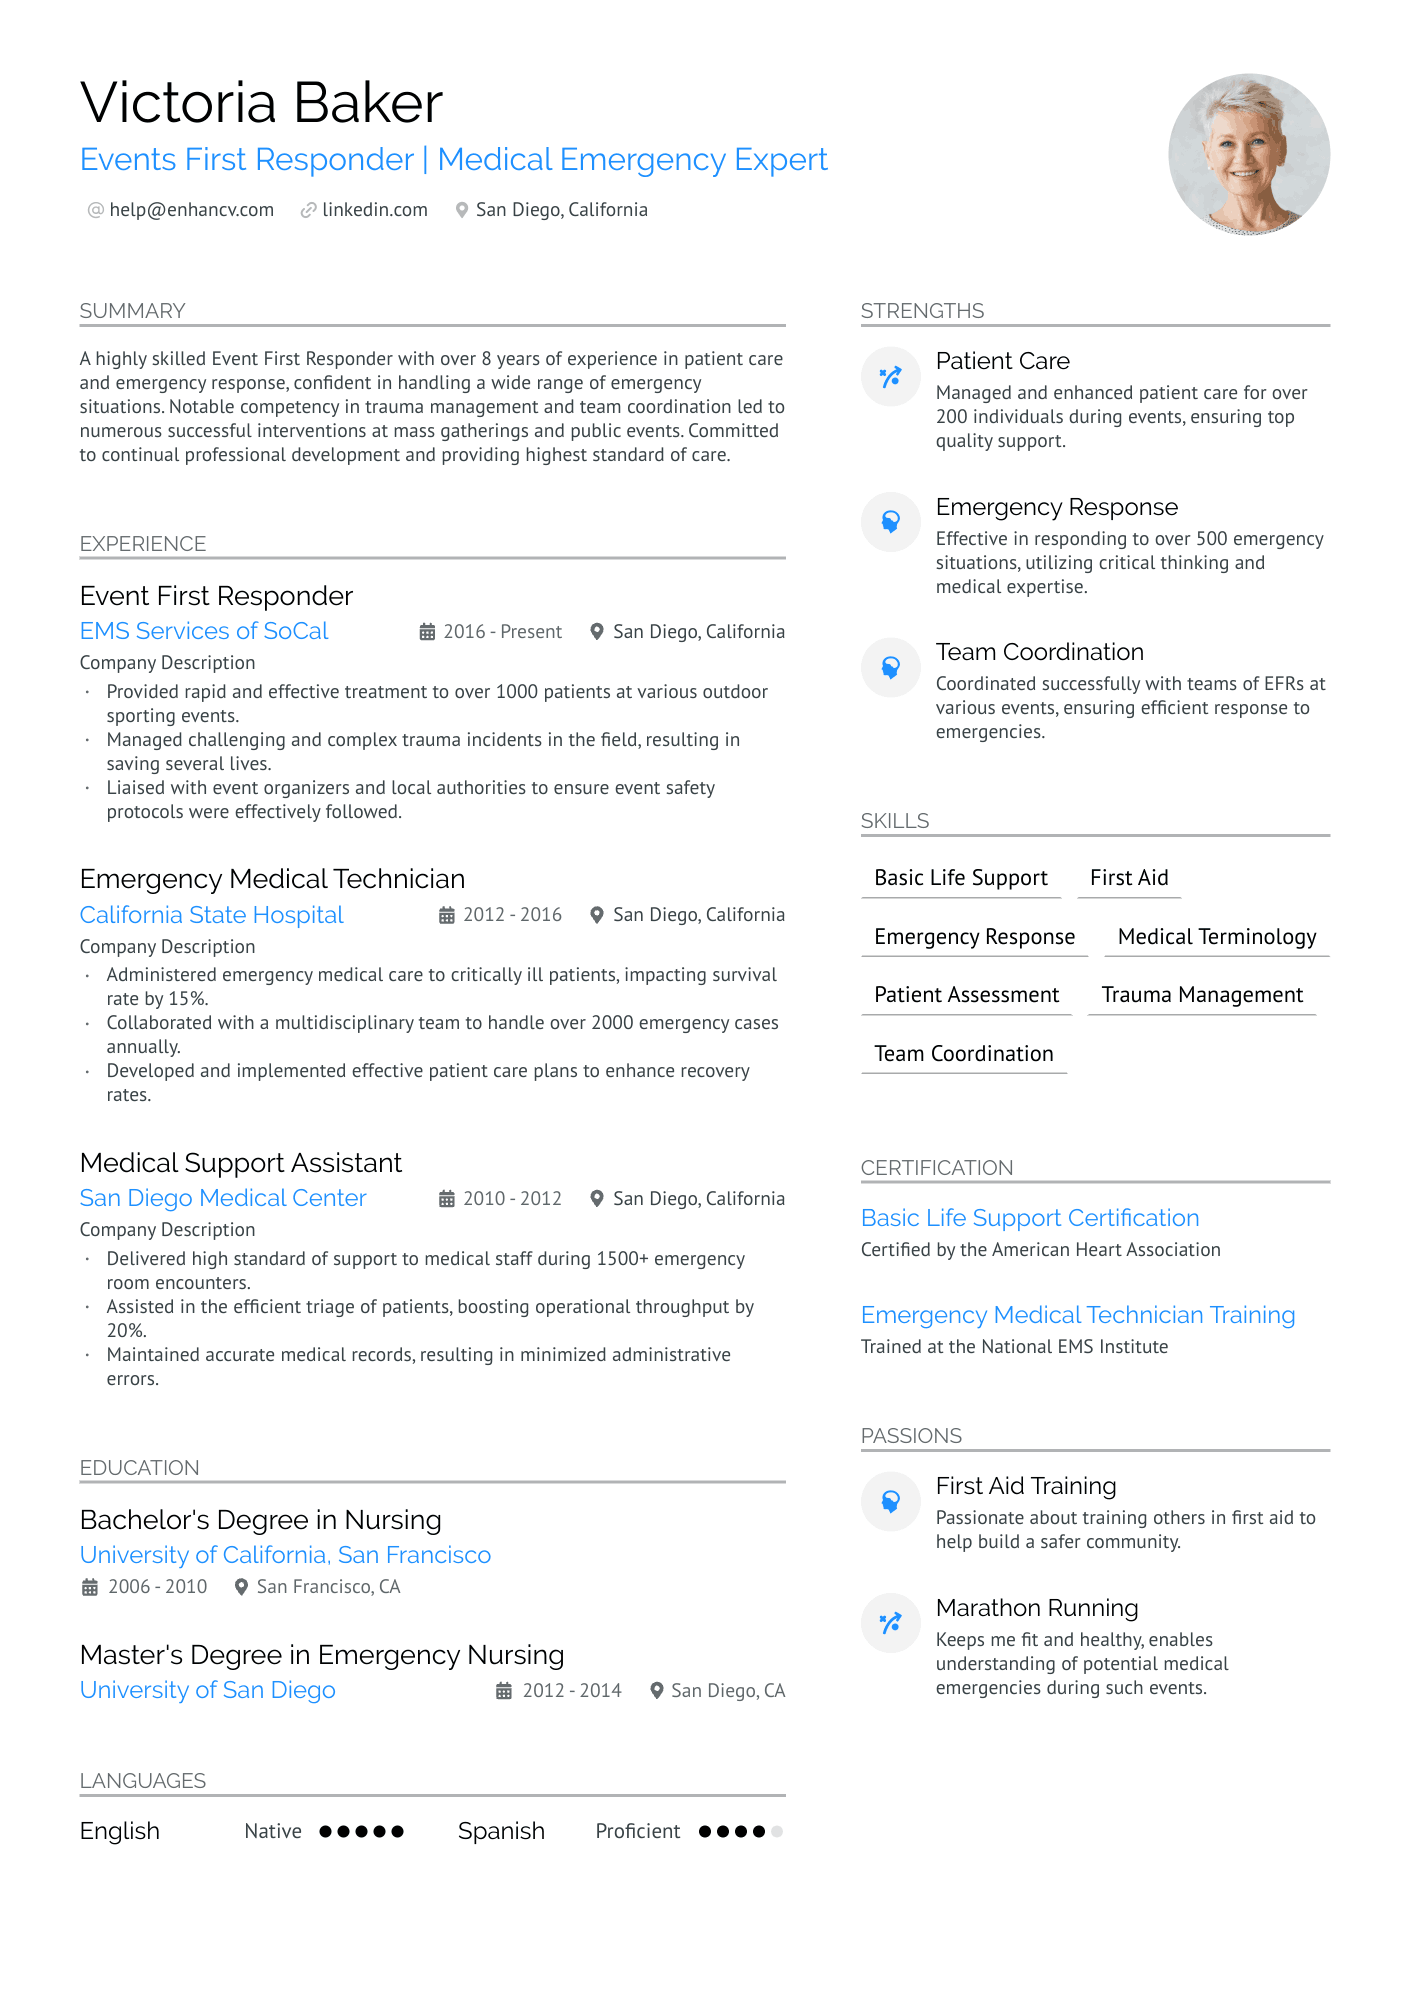 emt job resume help